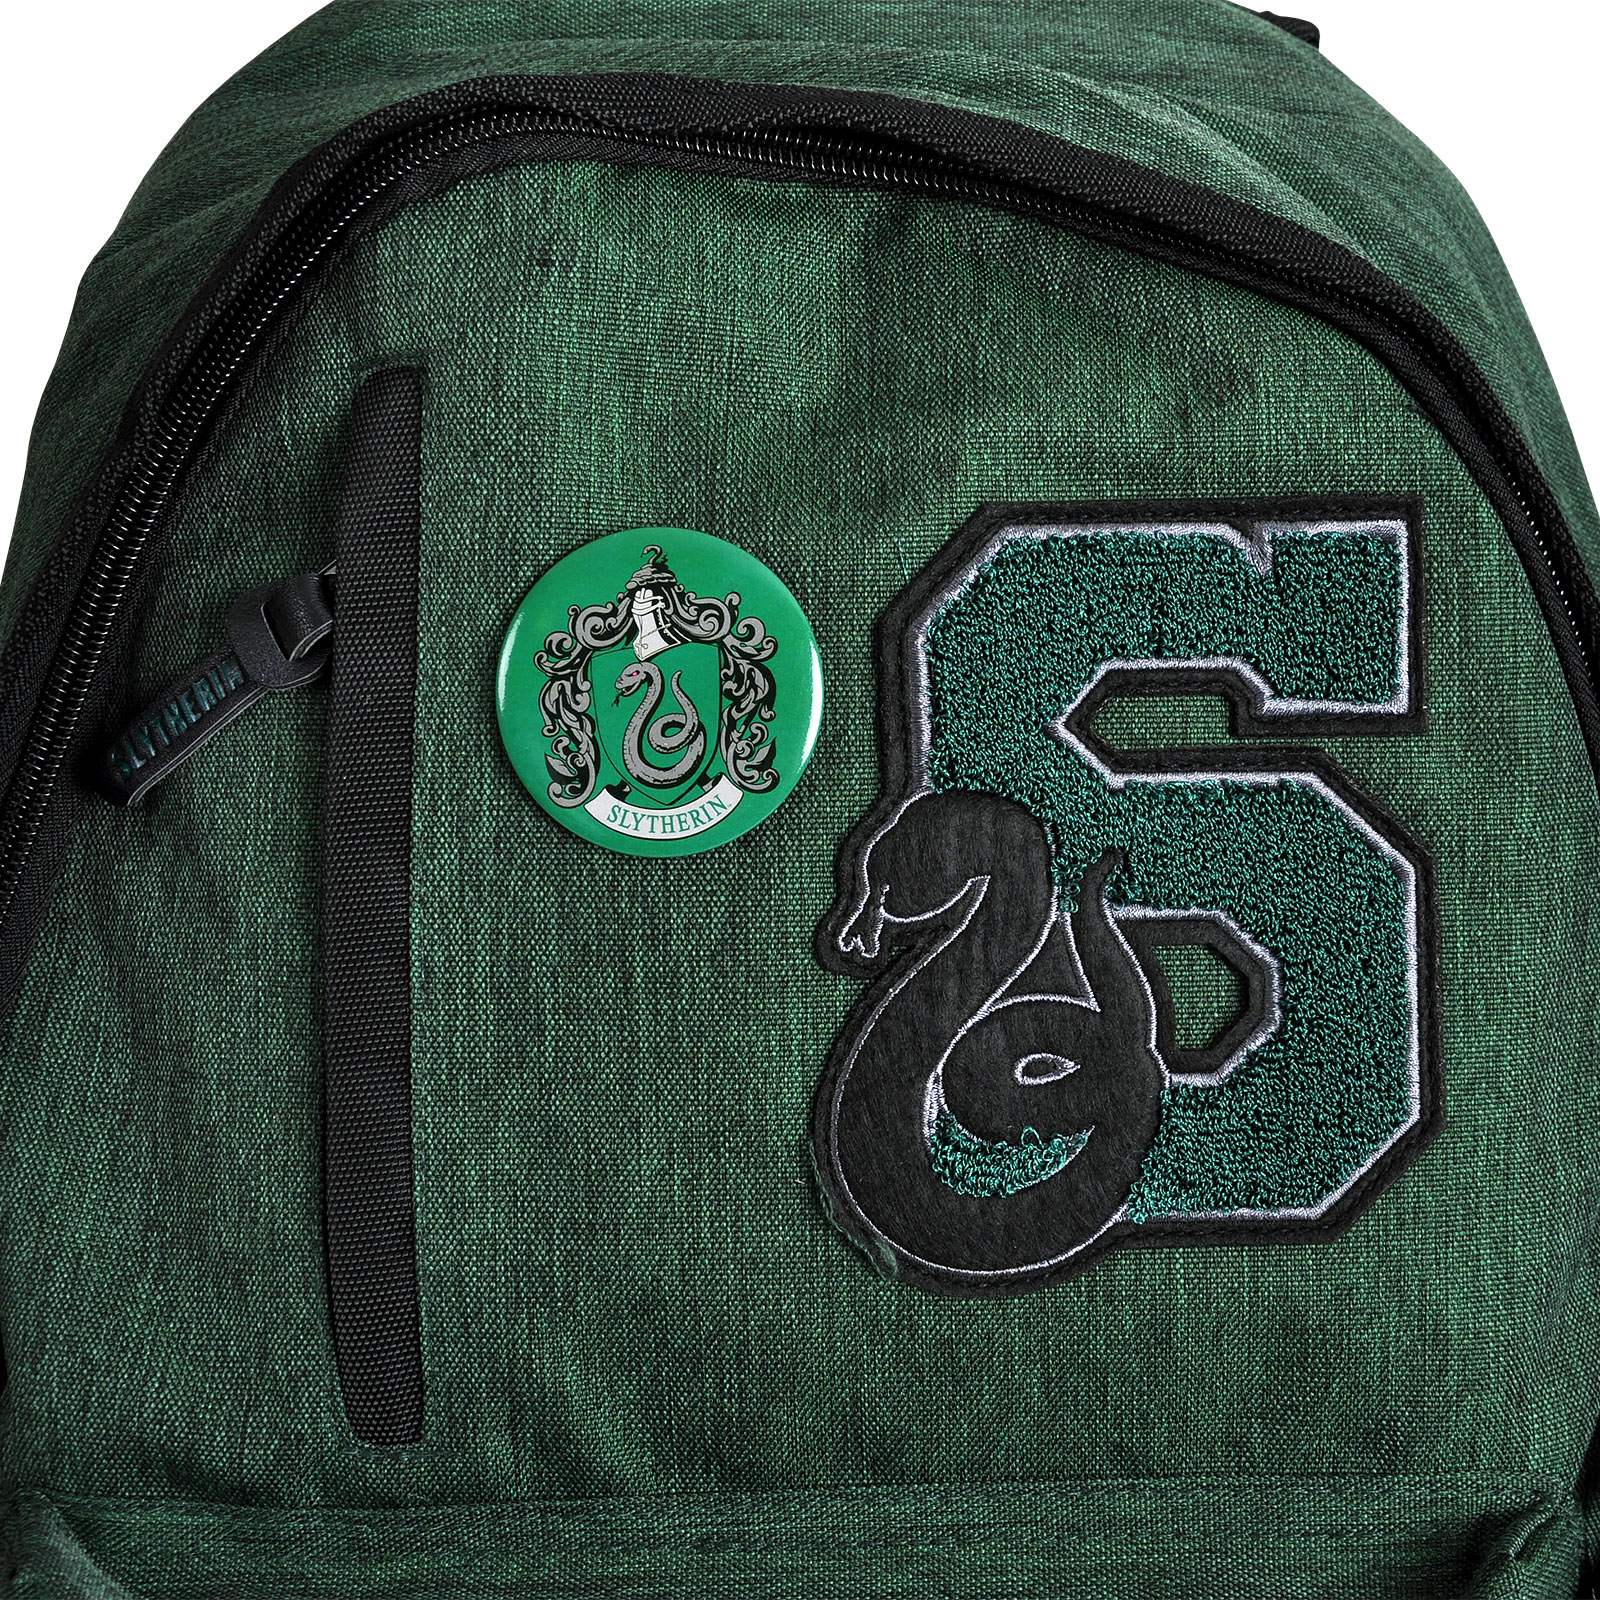 Harry Potter - Slytherin Crest Backpack